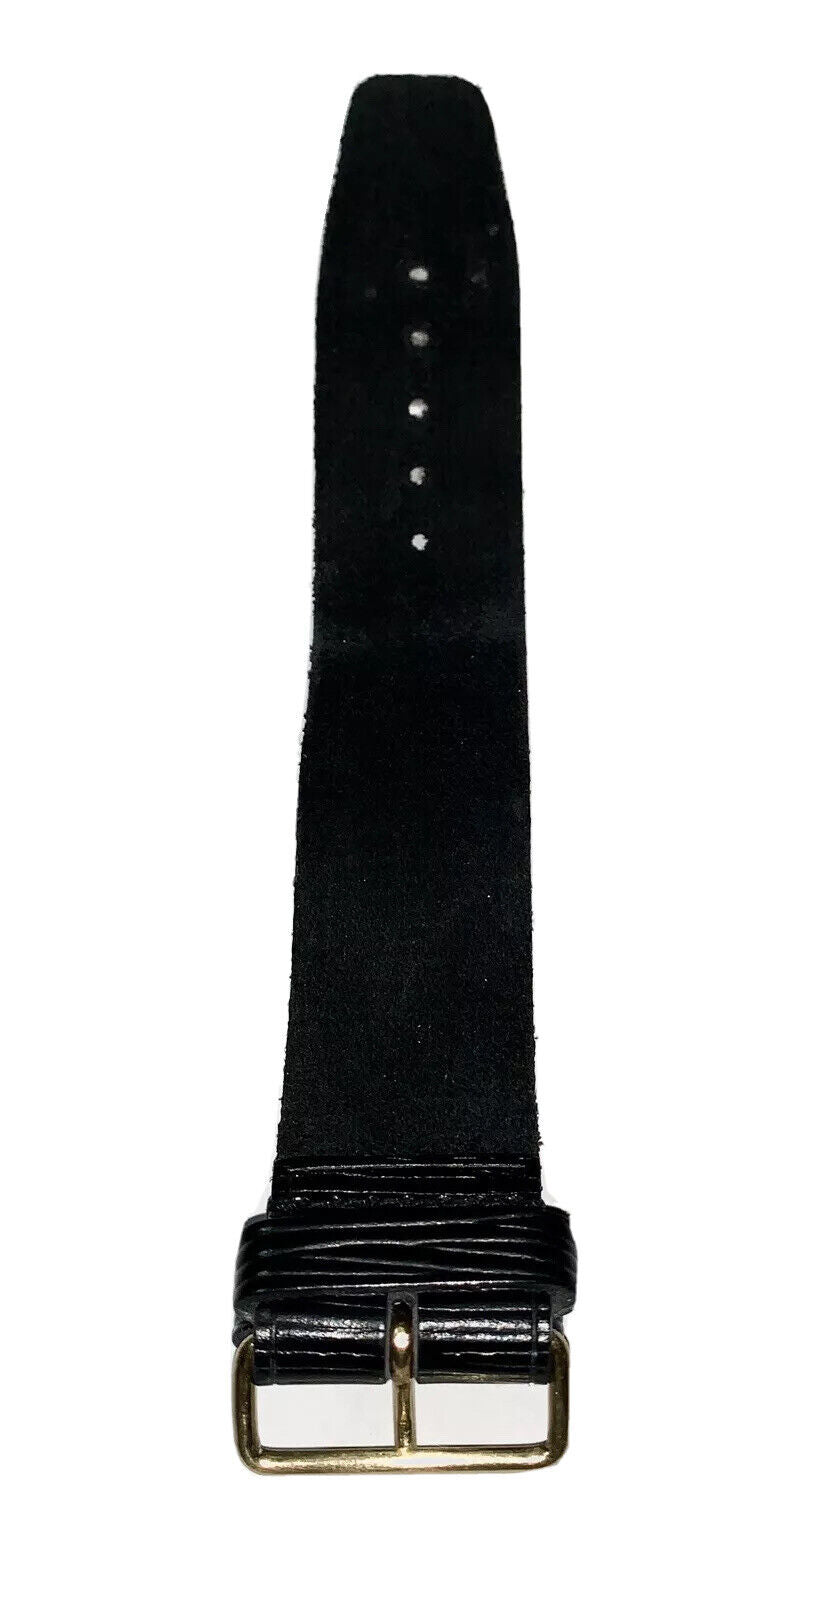 Authentic Louis Vuitton Black Epi Leather Strap Poignet - France - 1Pc